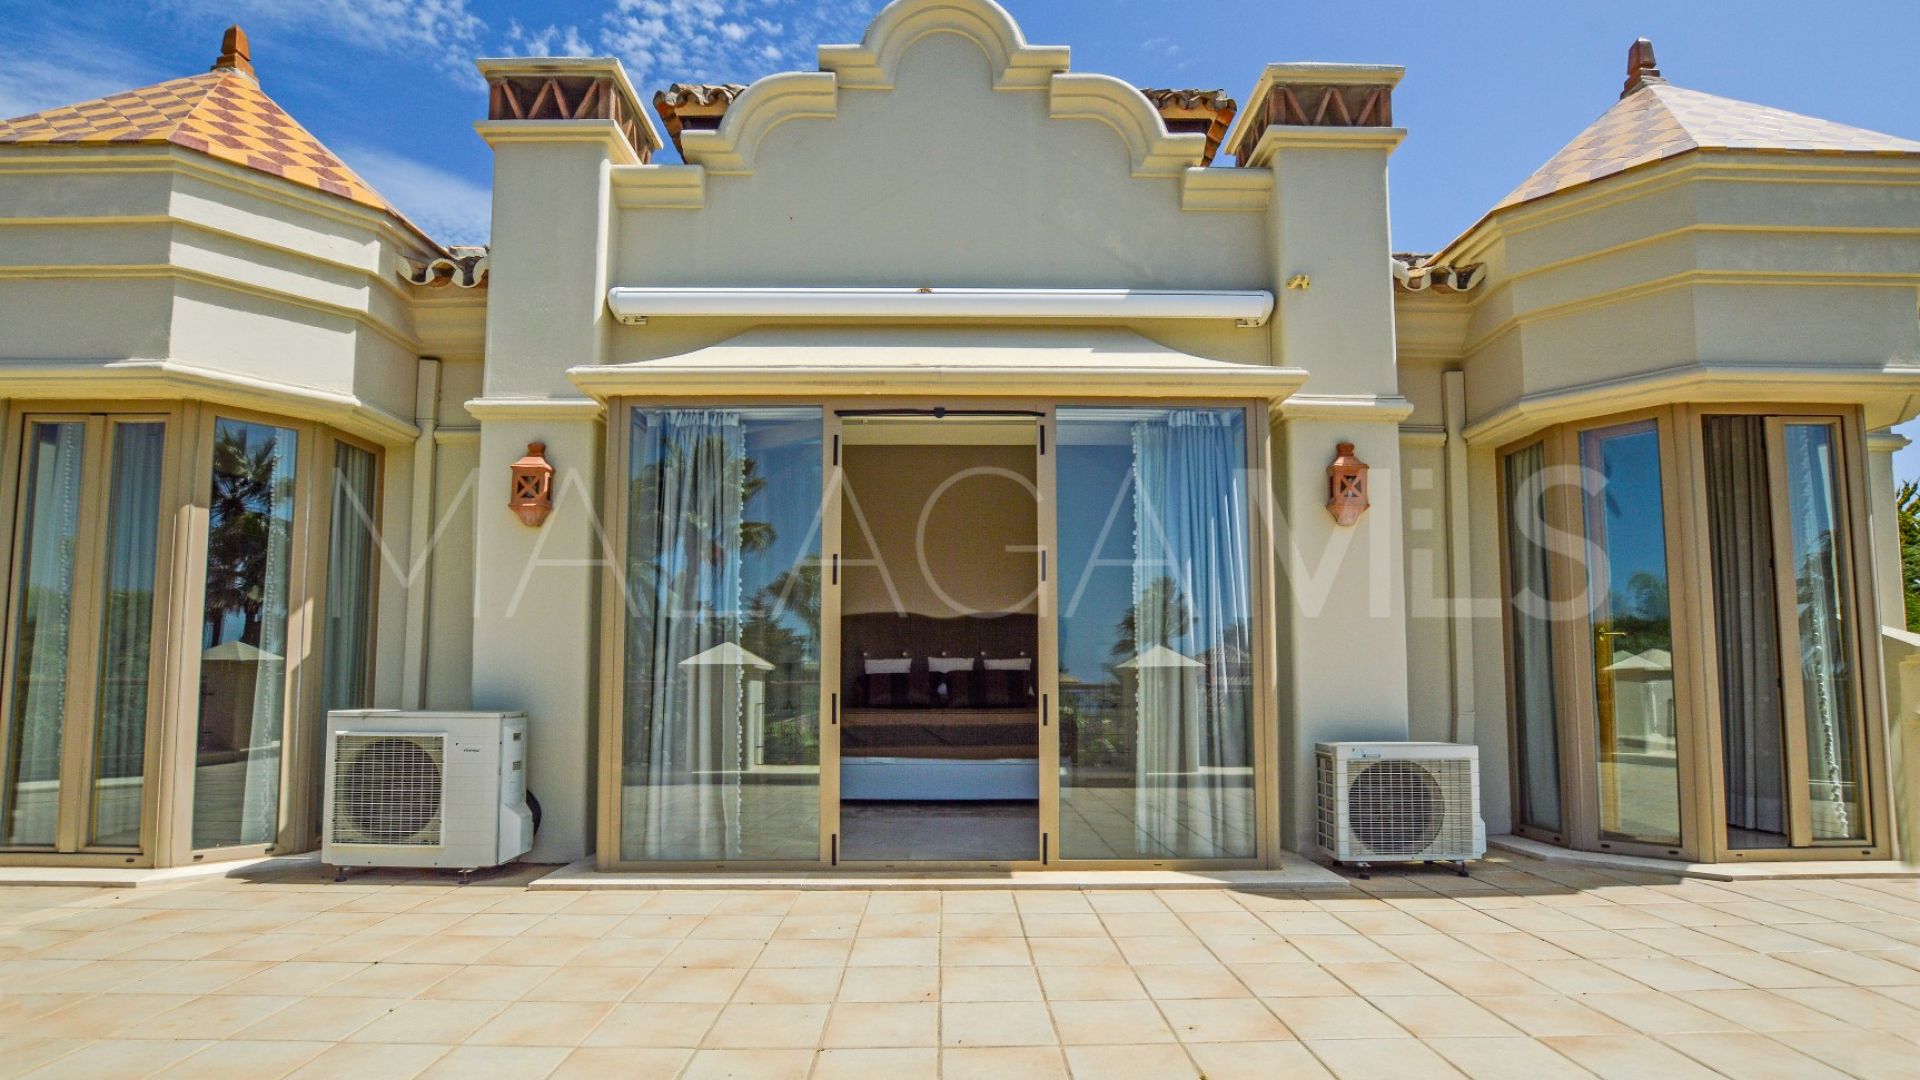 Villa for sale in Costabella